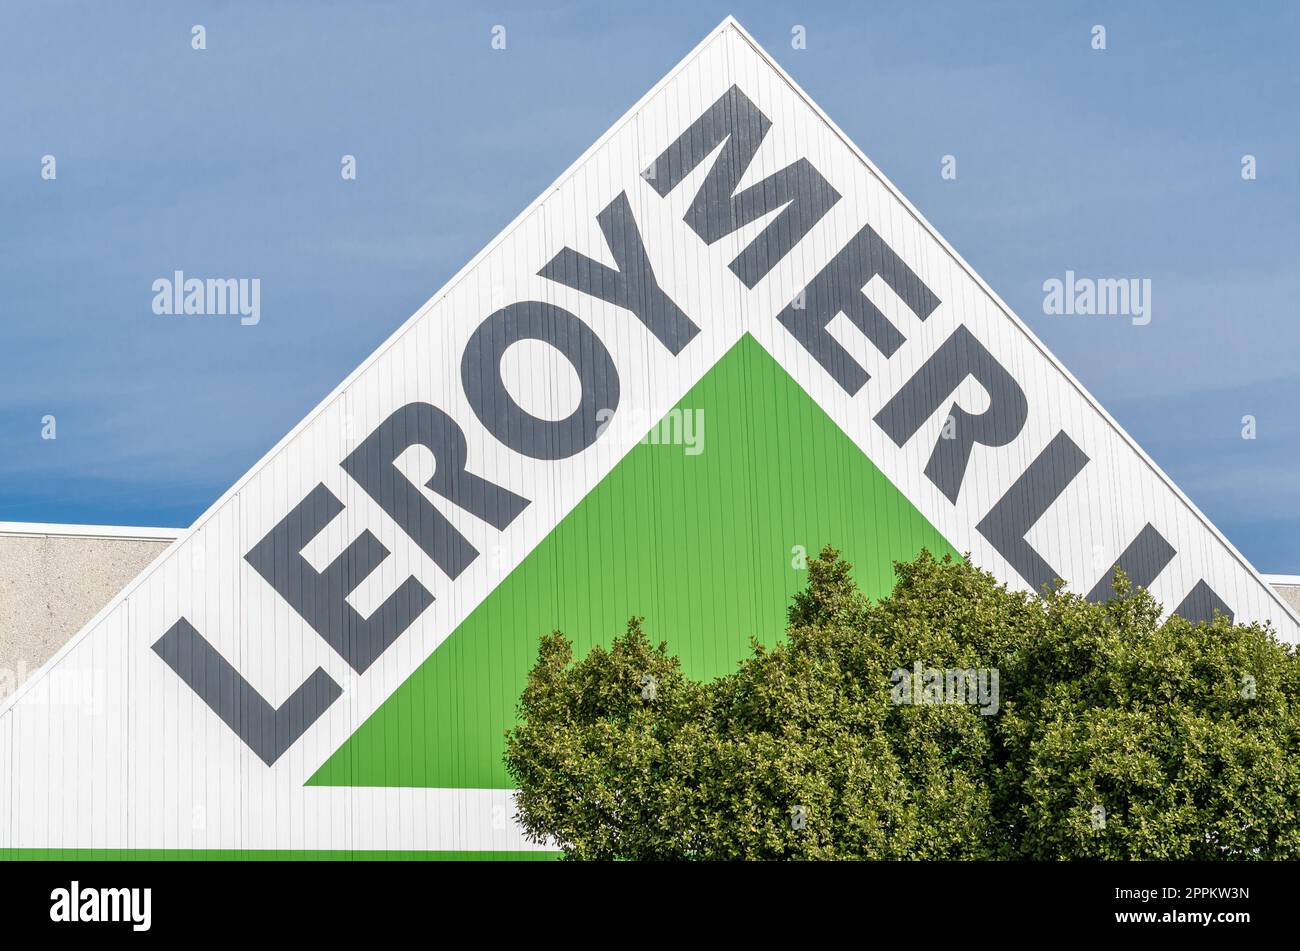 MARBELLA, SPANIEN - 11. OKTOBER 2021: Logo eines Leroy Merlin Stores in Marbella, Spanien. Leroy Merlin ist ein französischer Einzelhändler für Heimwerkerbedarf und Gartenbau, der 1923 gegründet wurde Stockfoto